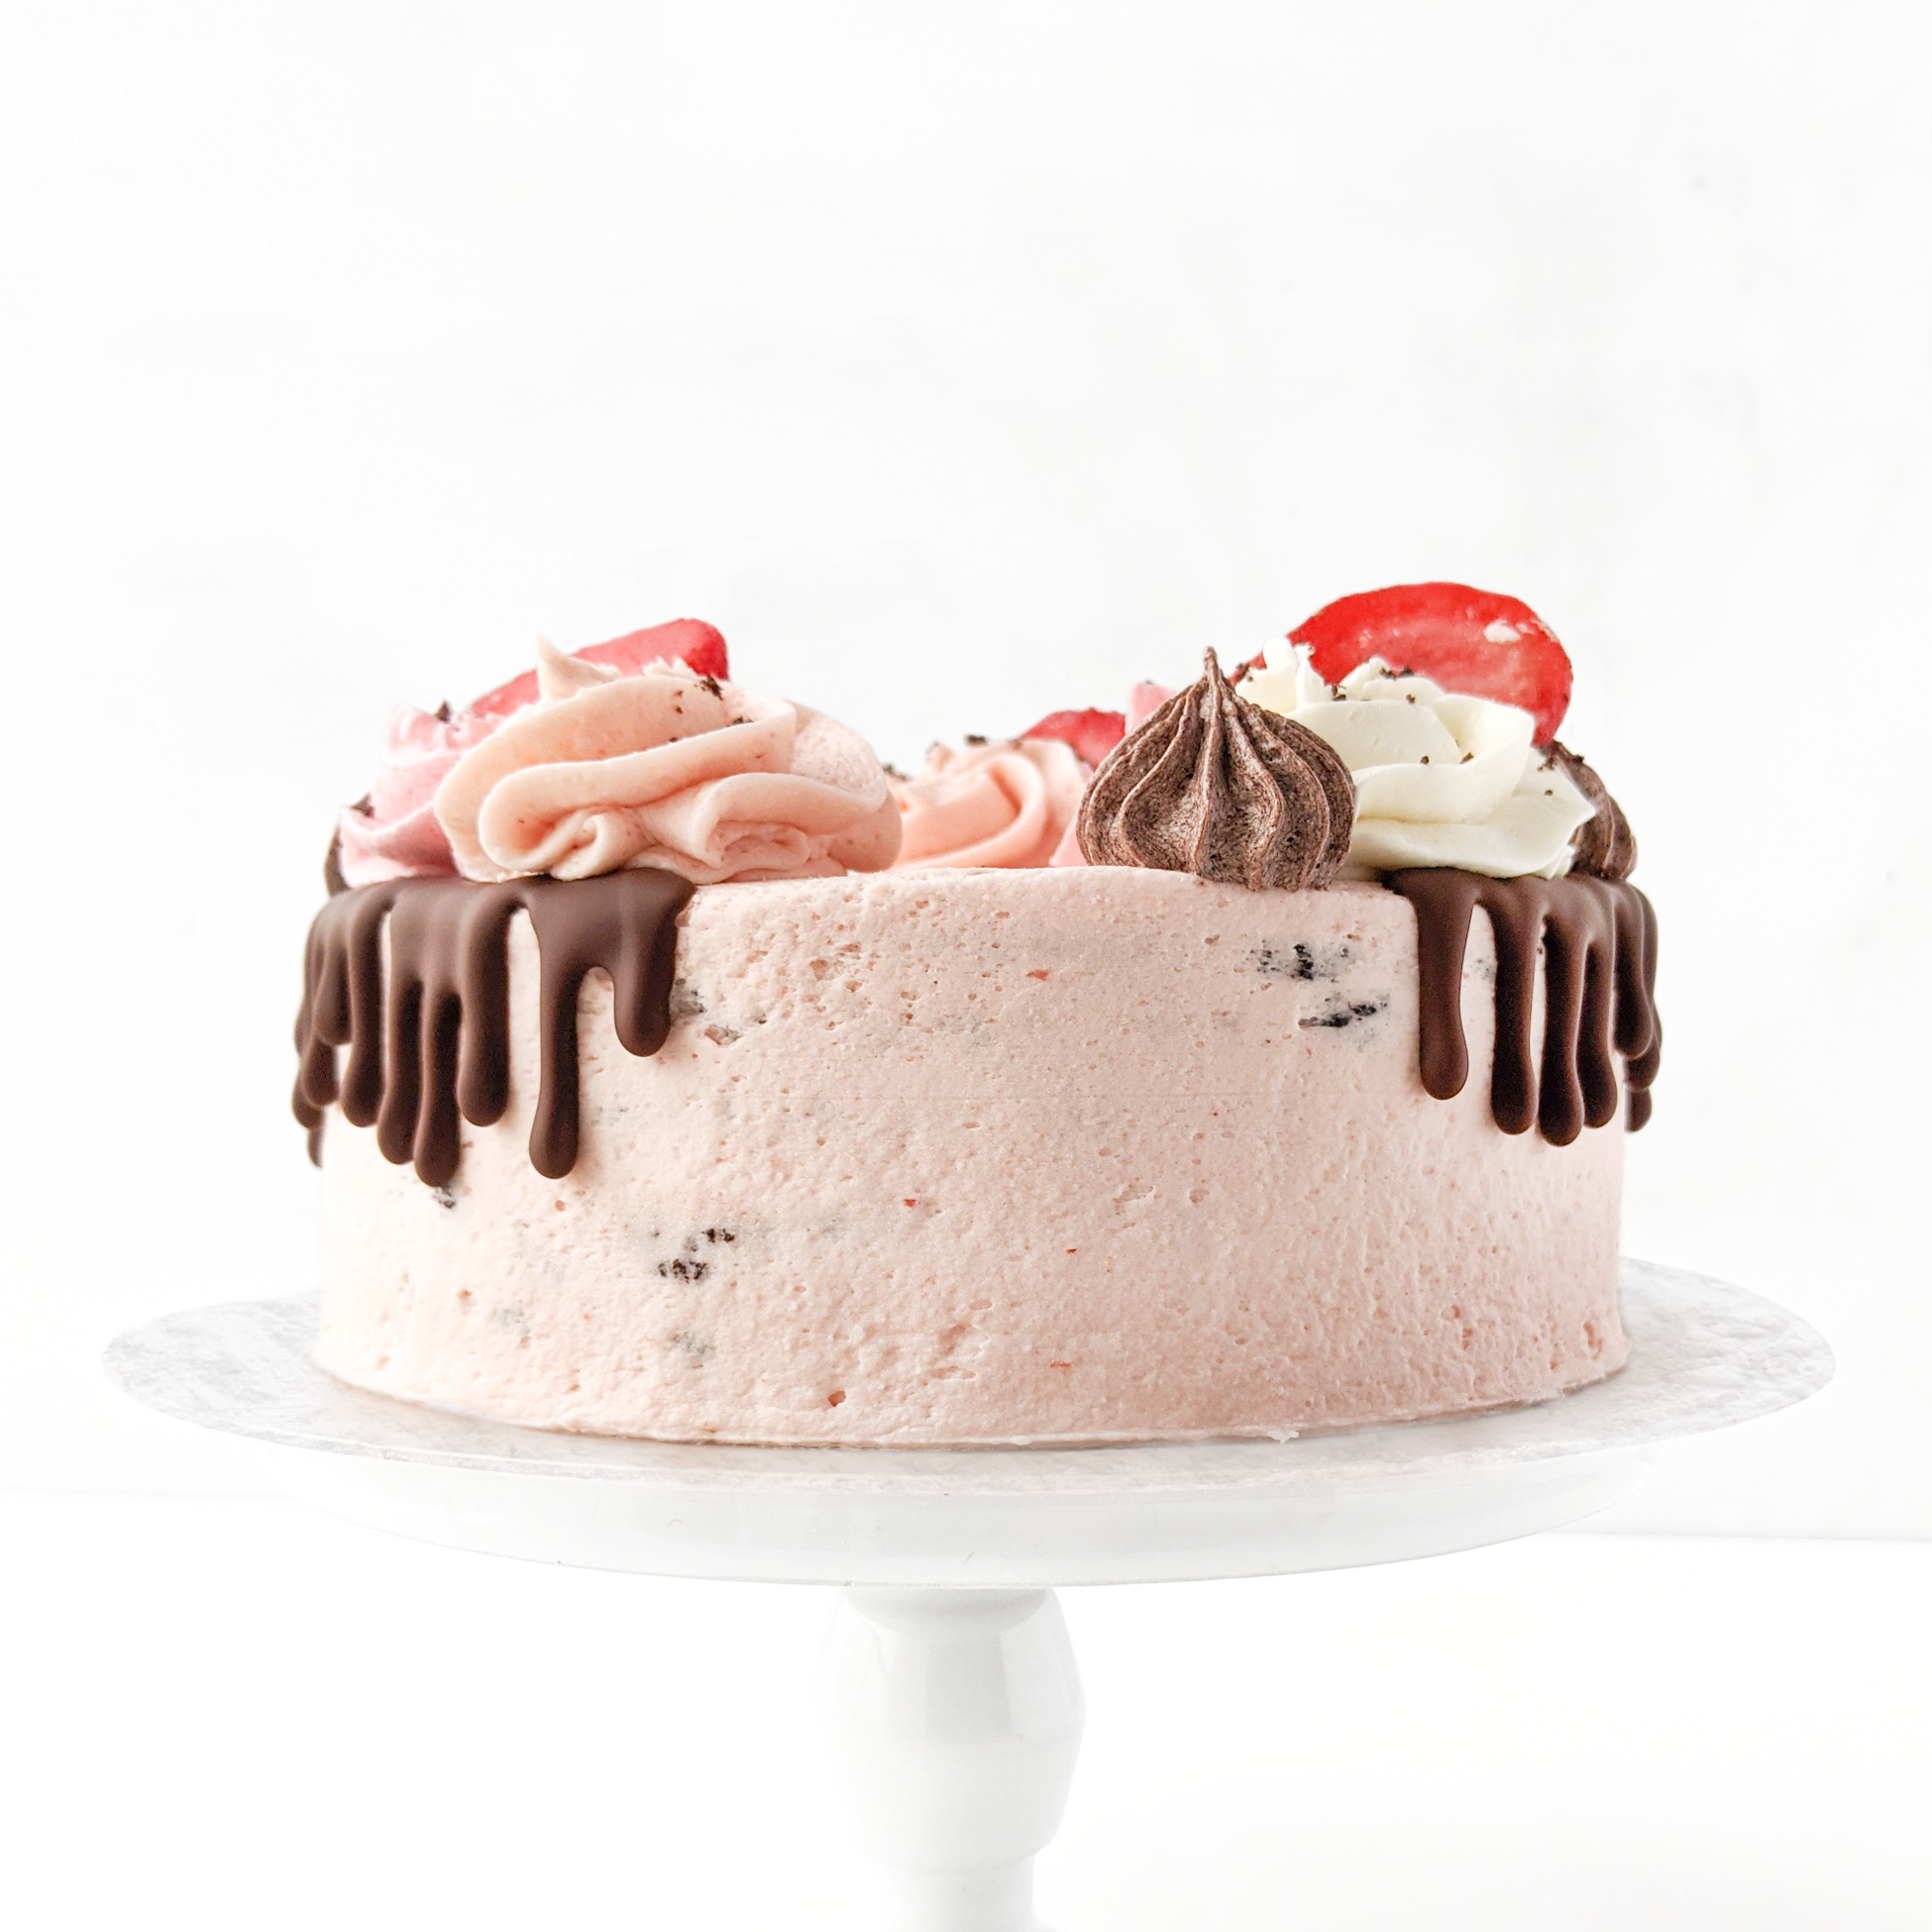 30 Strawberry Cake Recipes | MyRecipes